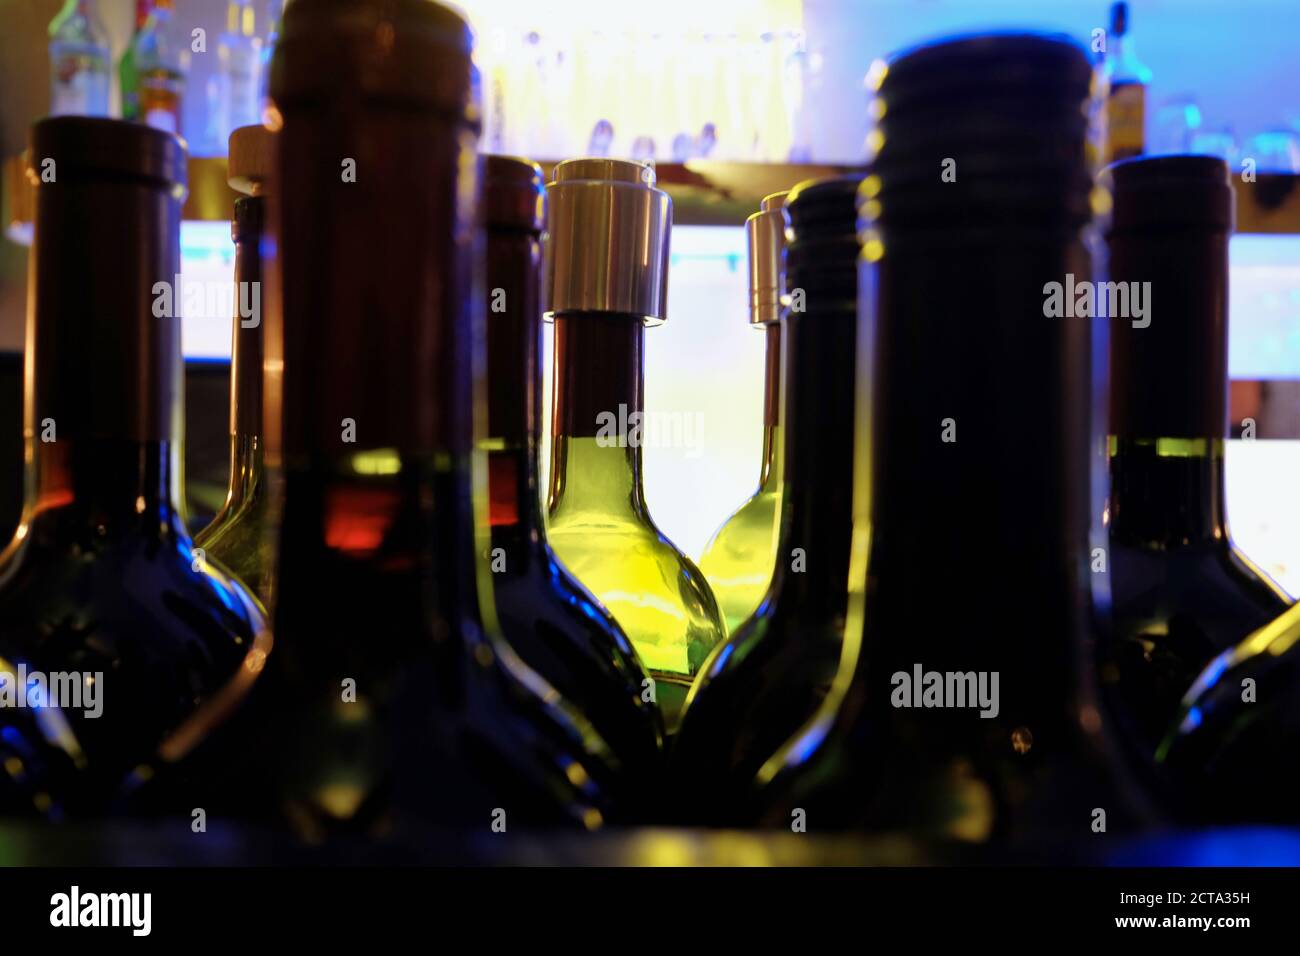 https://c8.alamy.com/compes/2cta35h/alemania-wiesbaden-botellas-de-vidrio-con-alcohol-en-un-bar-nocturno-2cta35h.jpg